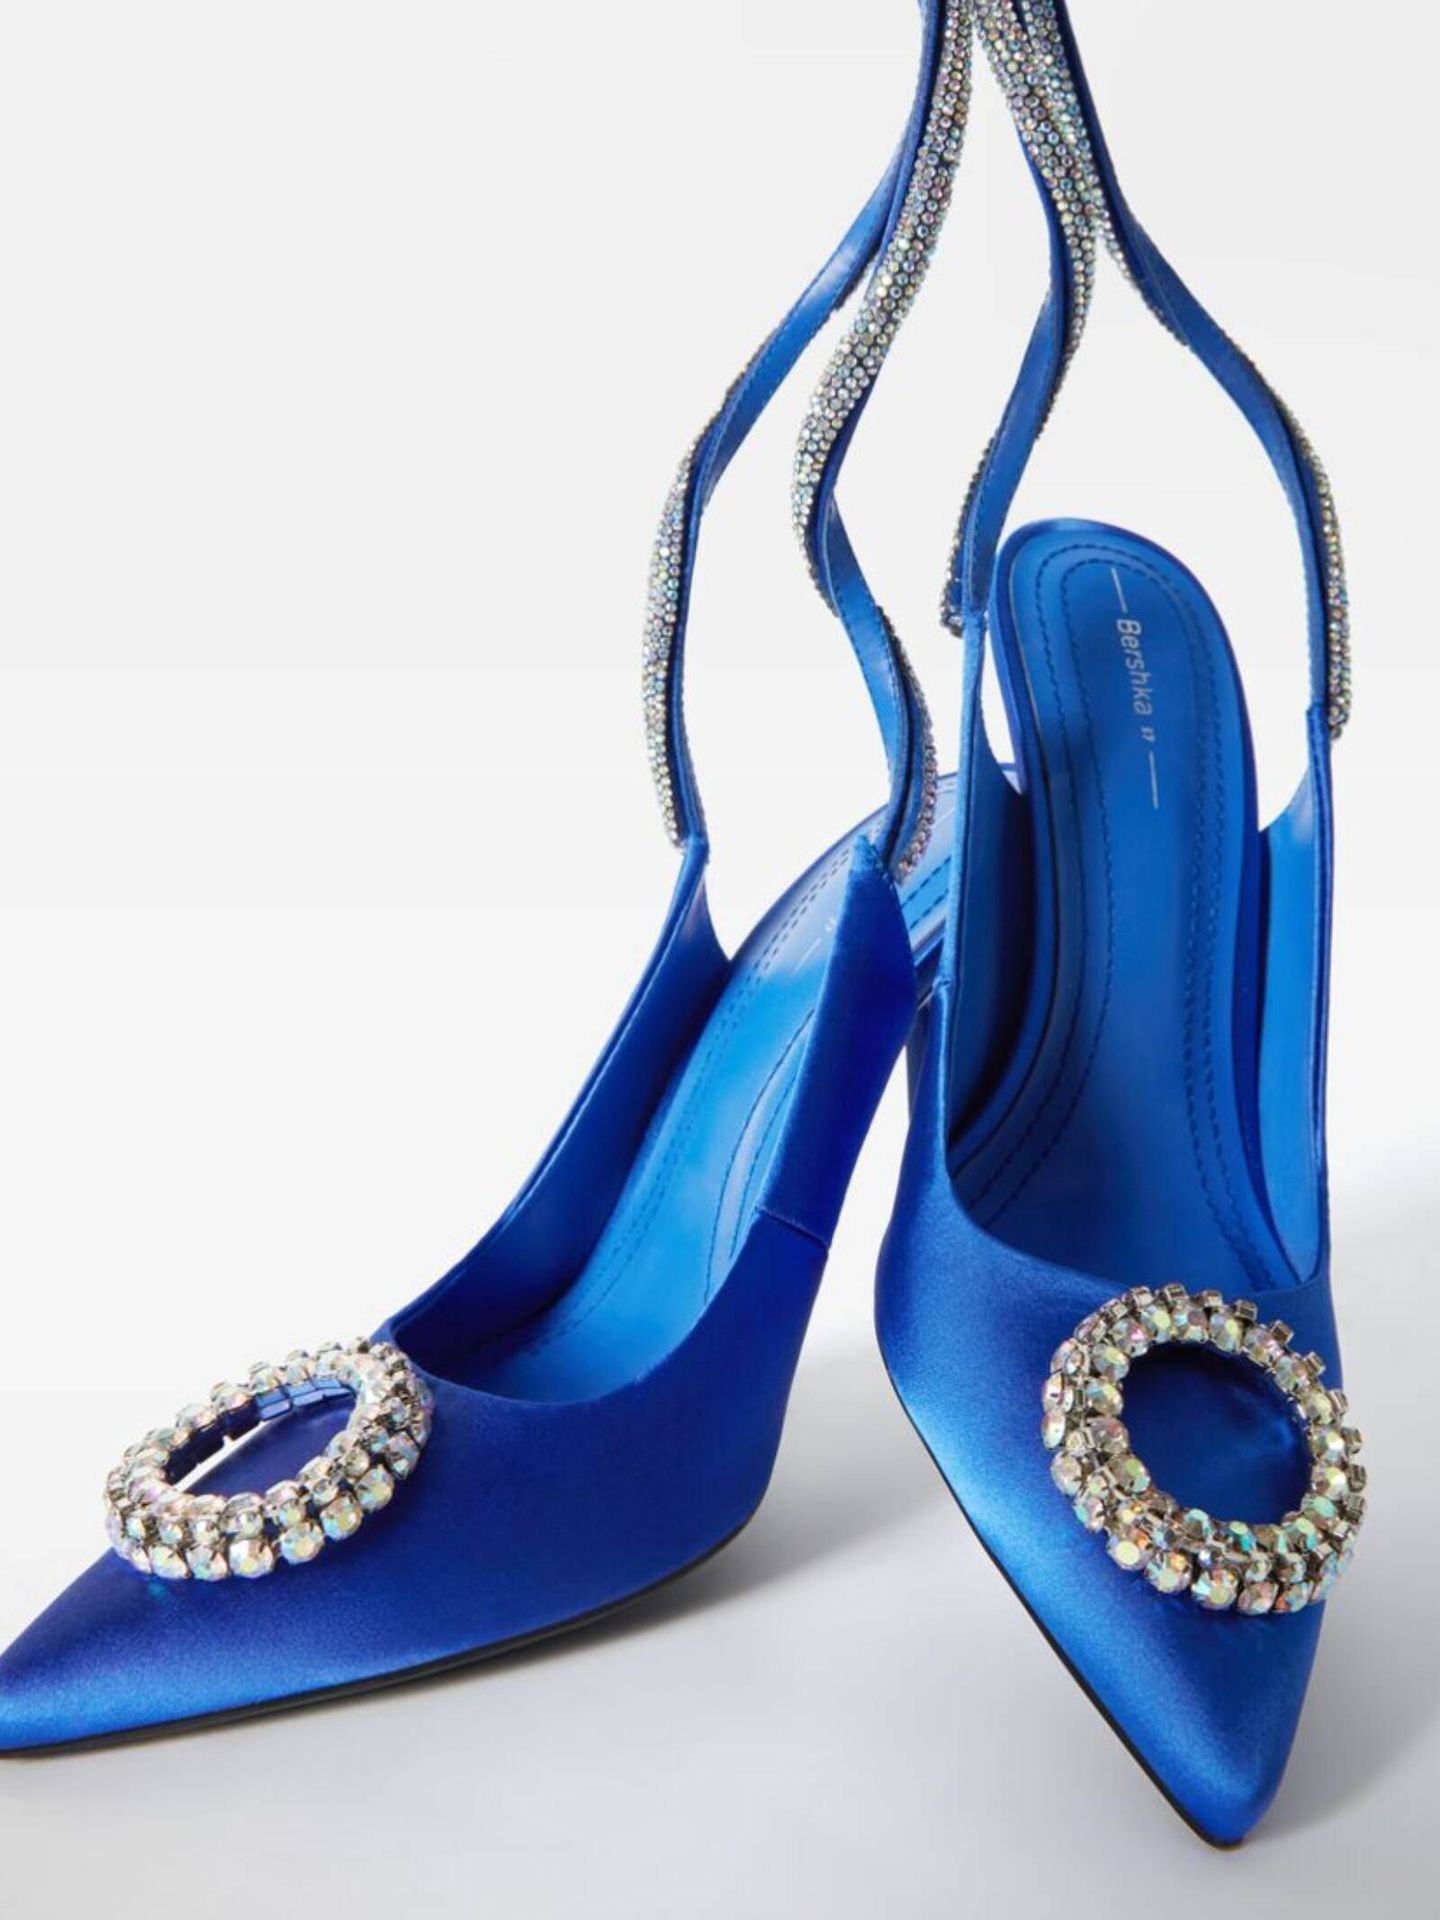 Atrévete a darle color a tus nuevo vestido de Zara con estos zapatos de Bershka. (Cortesía)